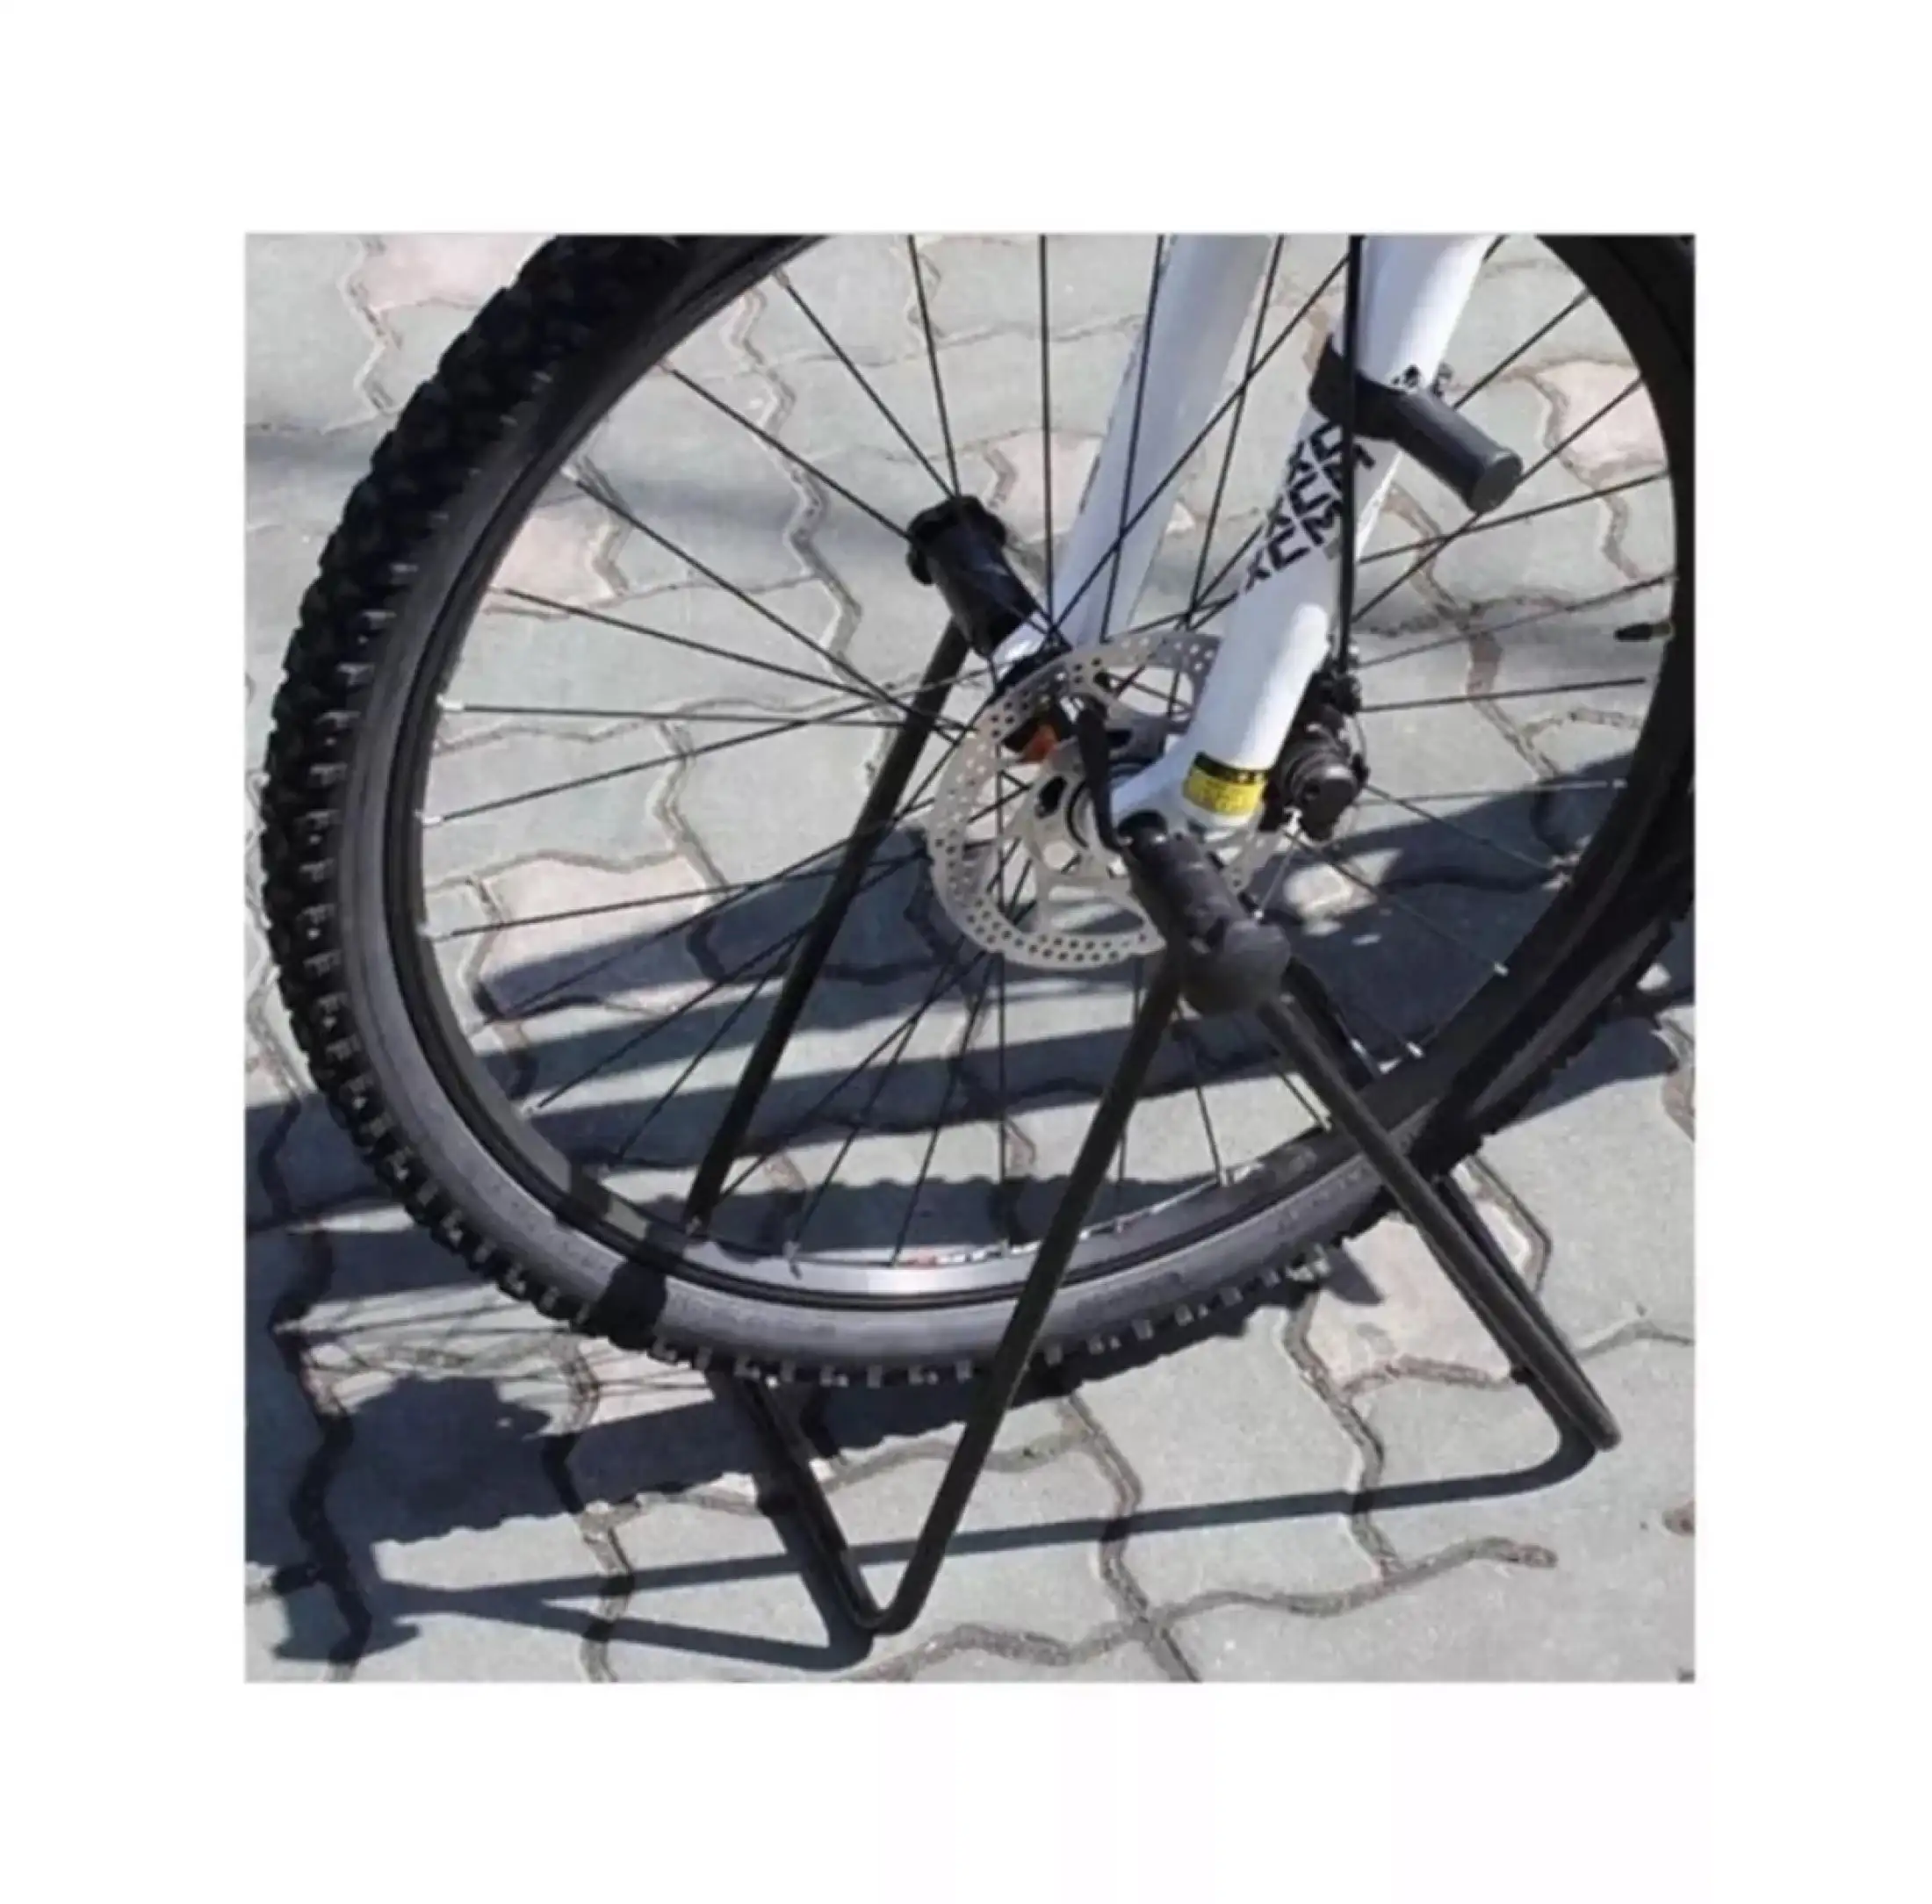 bicycle repair rack